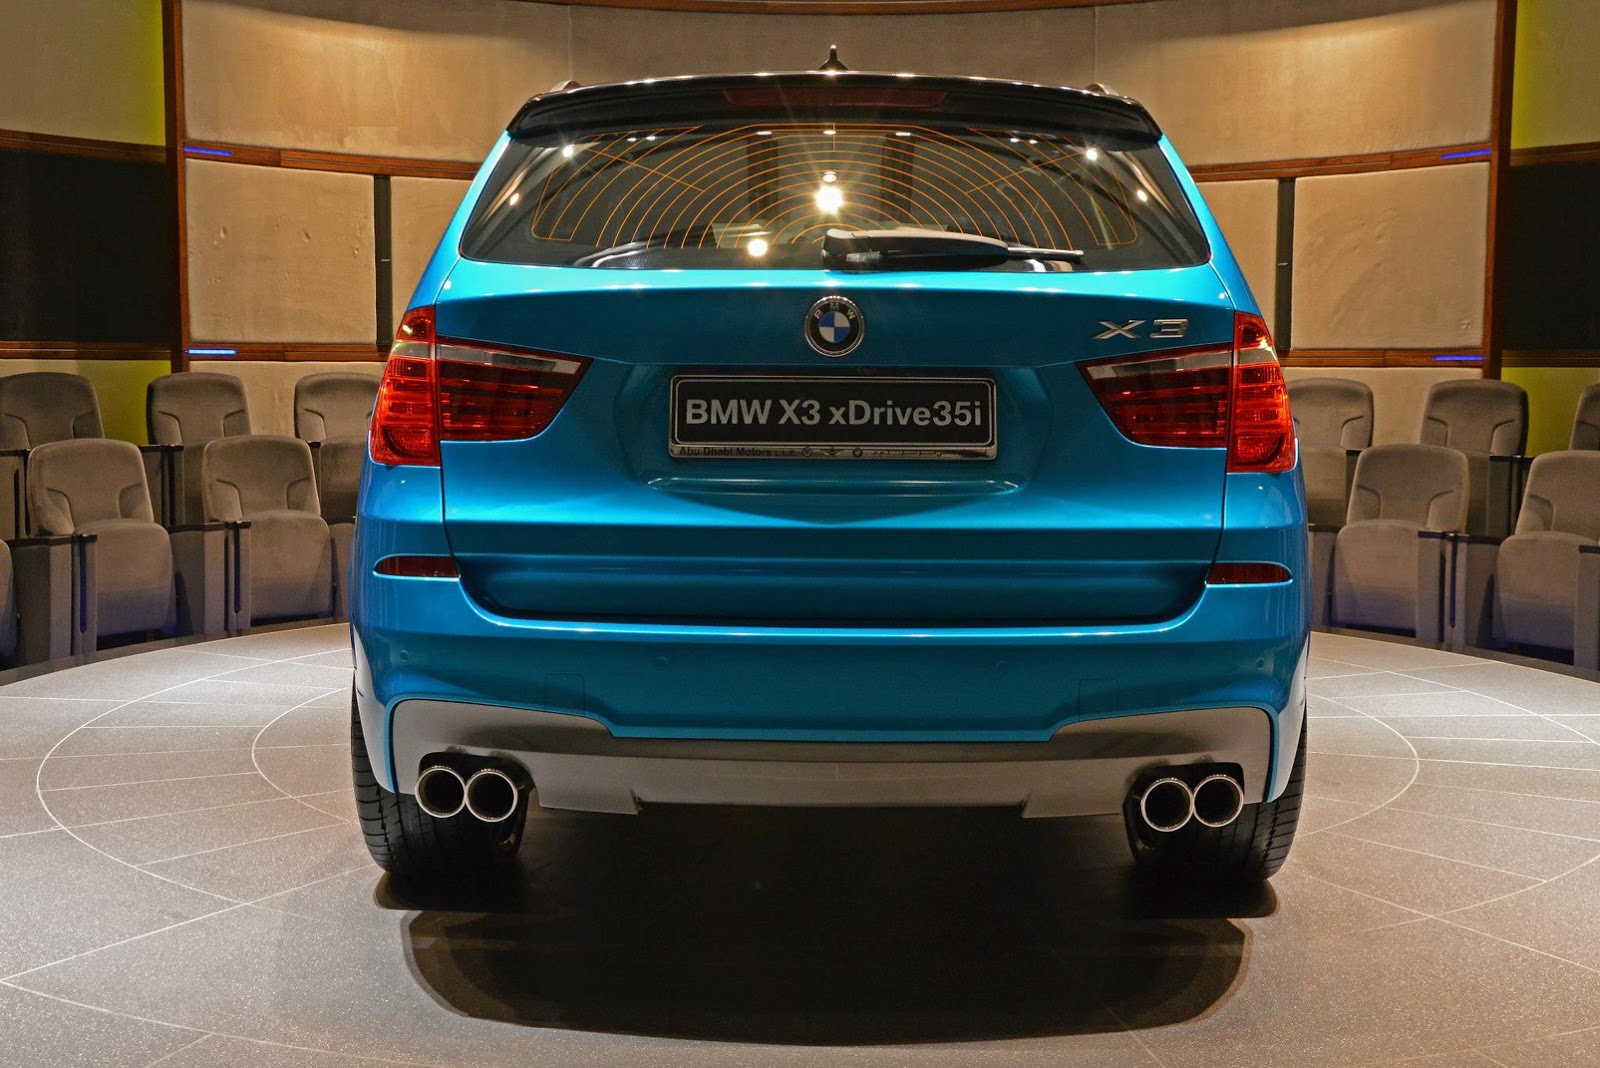 BMW X3, Abu Dhabi